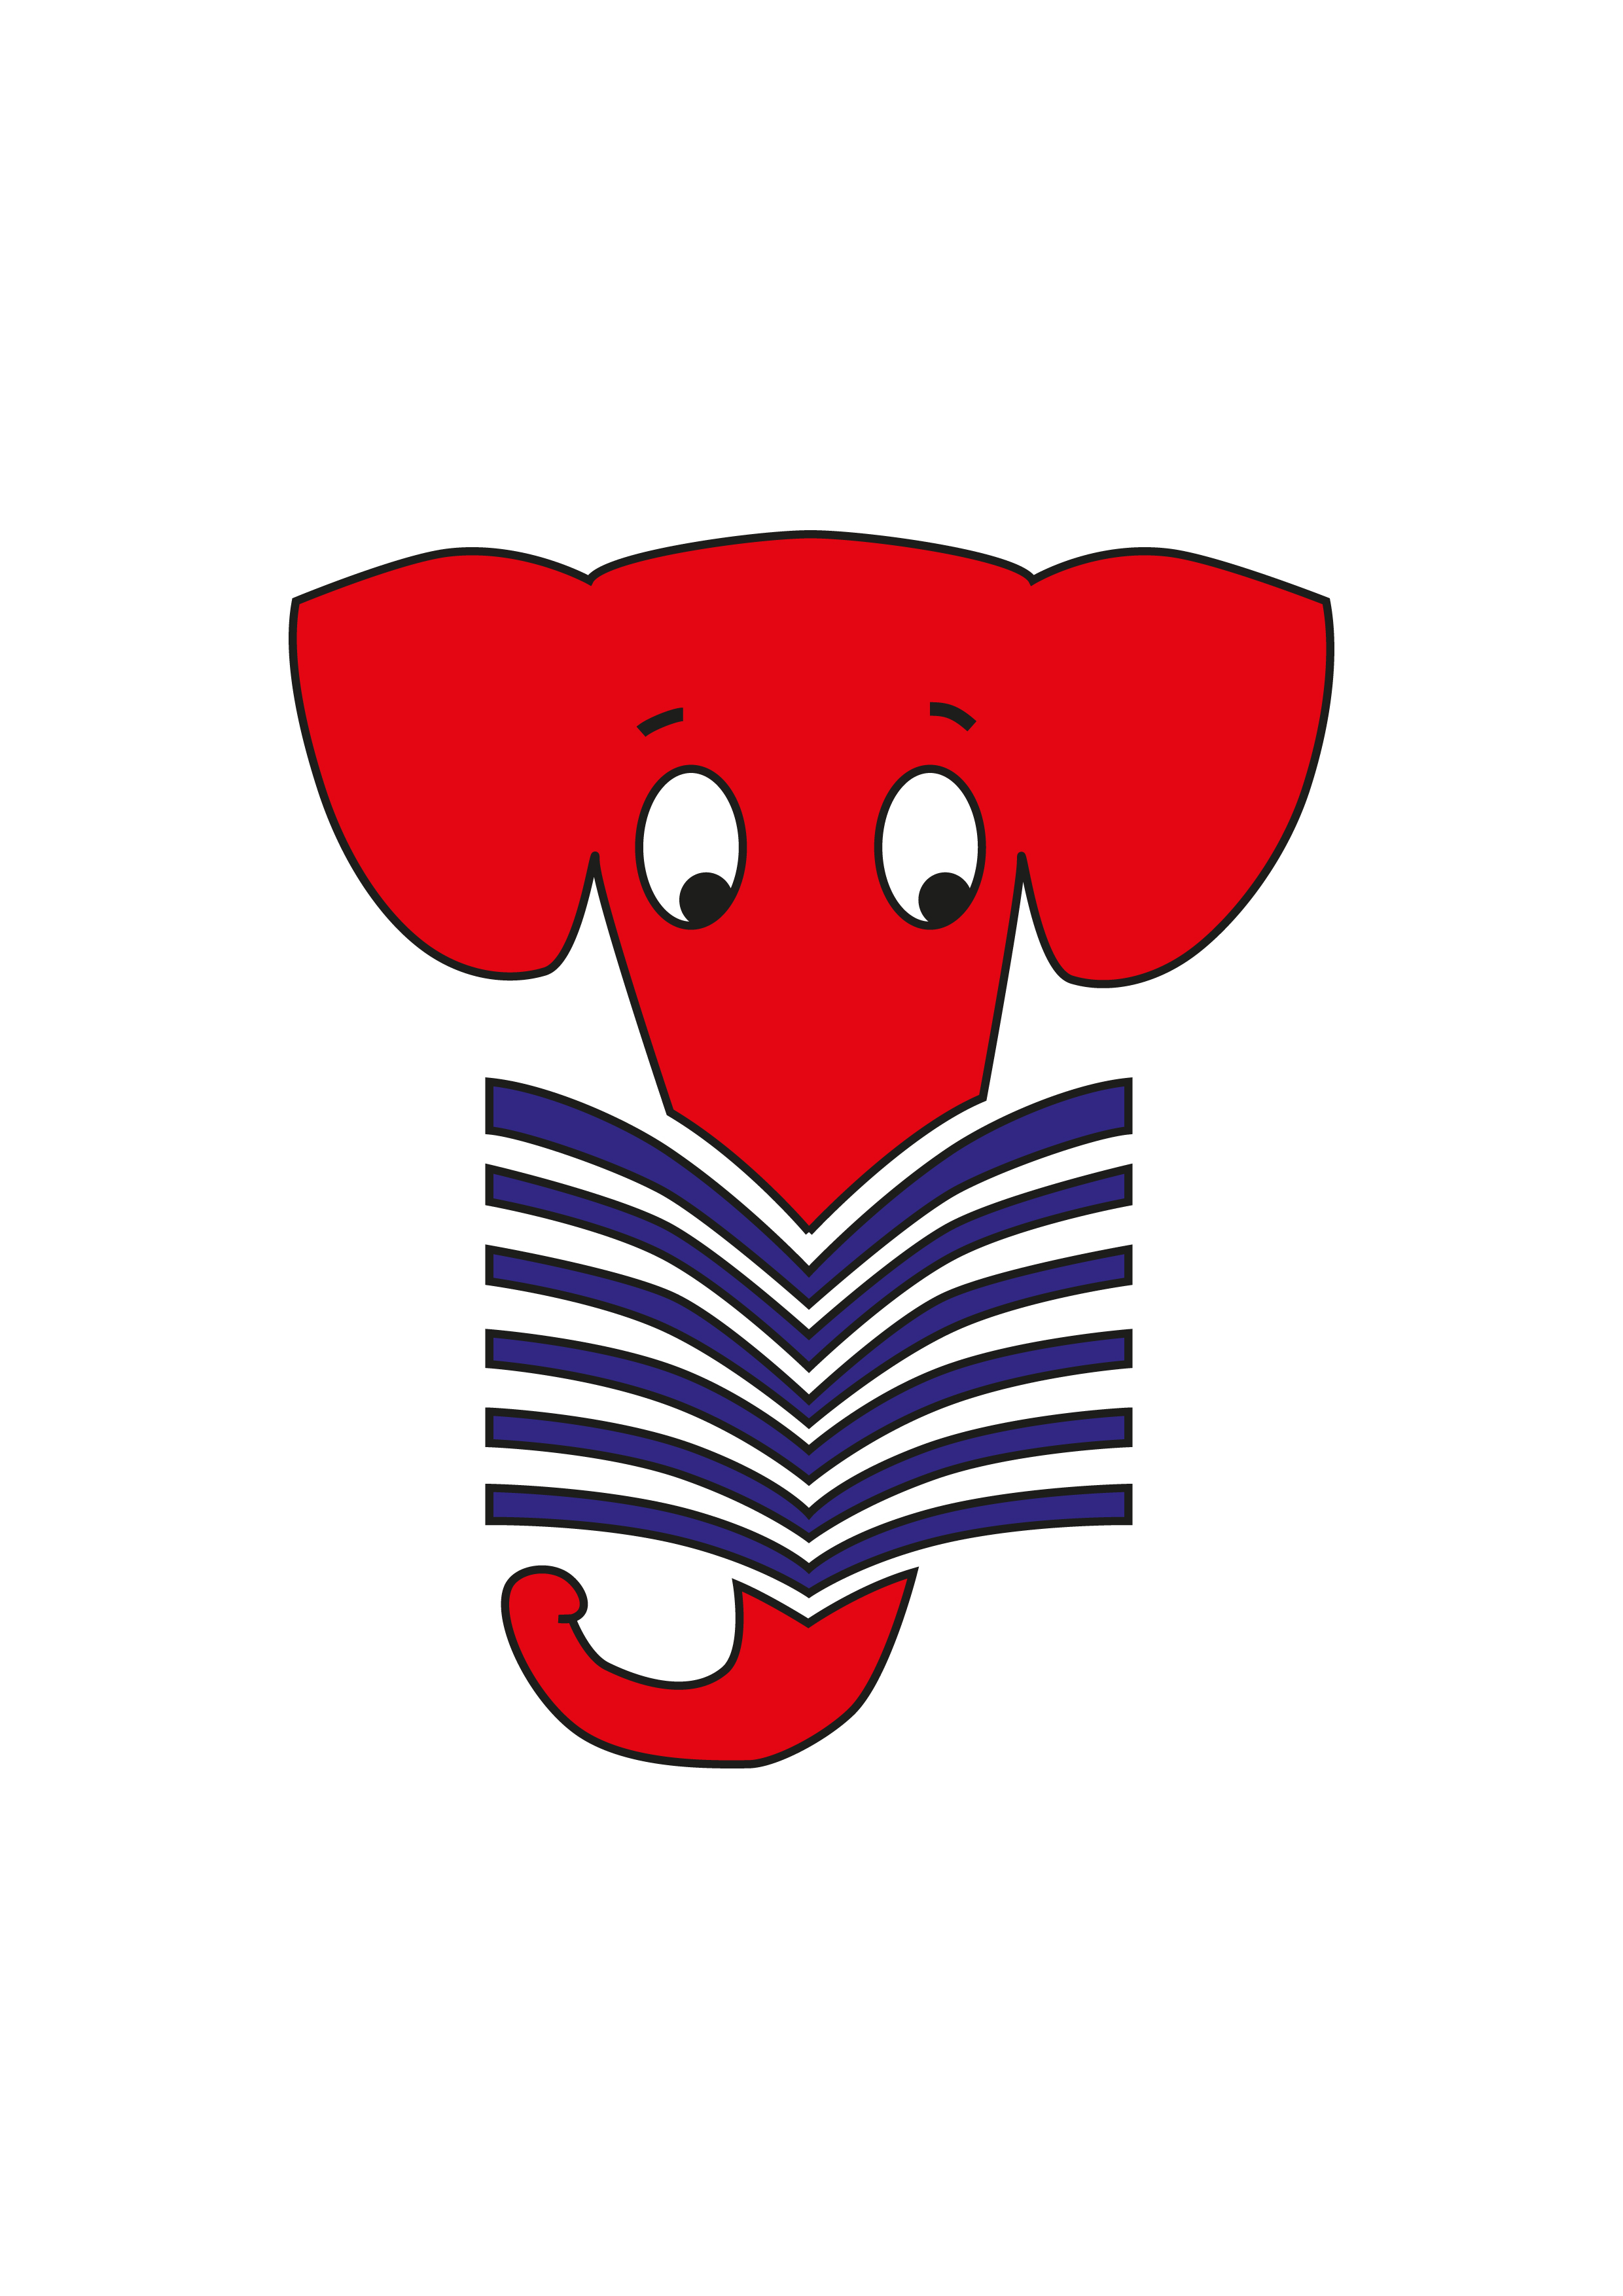 Logo des Lesefantenclubs zeigt einen lesenden roten Elefanten.